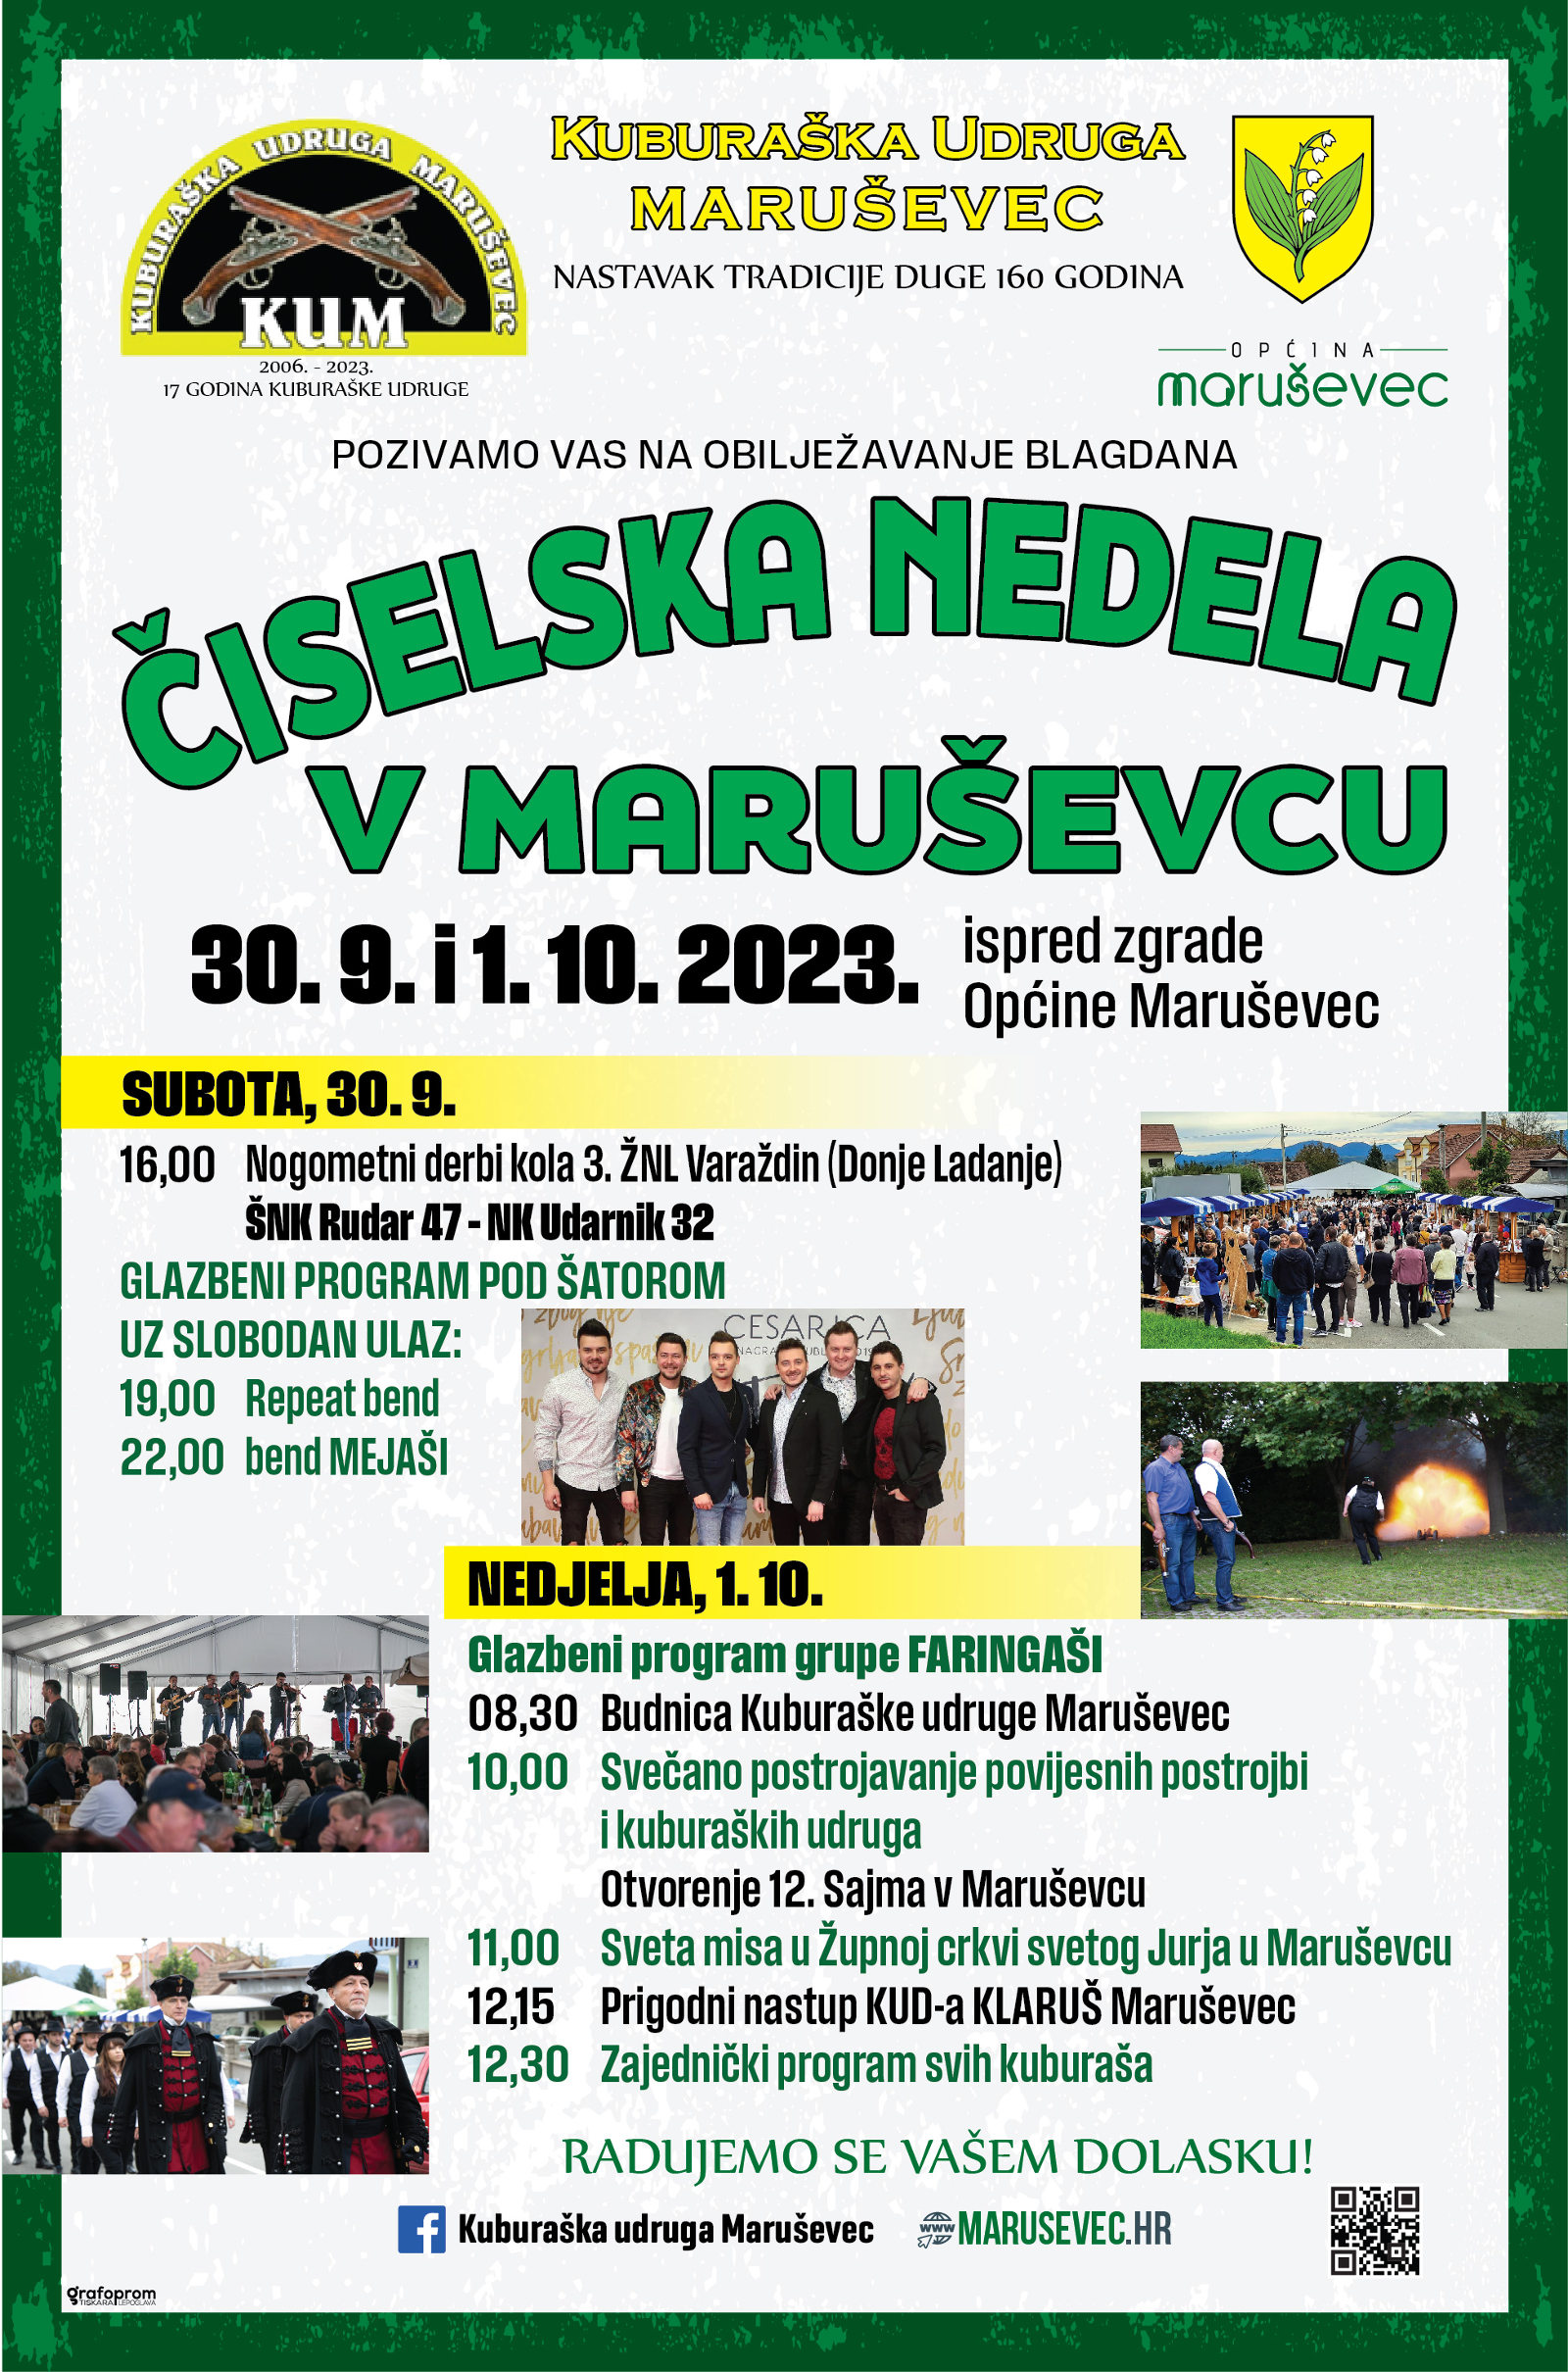 ciselska_nedela_v_marusevcu_2023_program.jpg